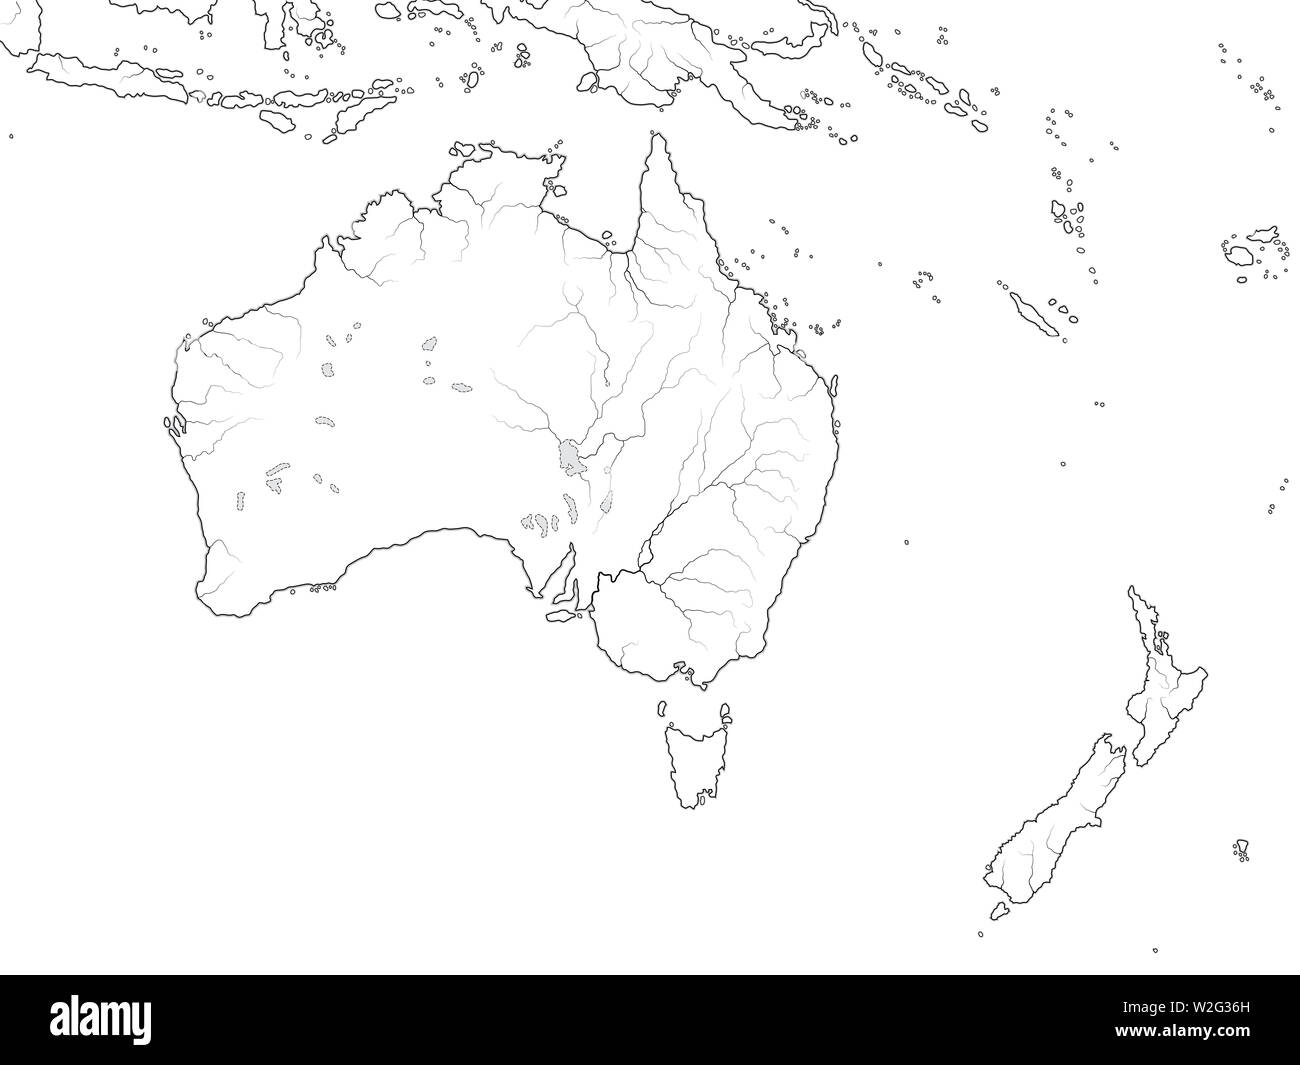 Mappa mondiale del continente Australia: Australia, Nuova Zelanda, Oceania Micronesia, Melanesia, Polinesia, Oceano Pacifico. Grafico geografica con coste. Foto Stock